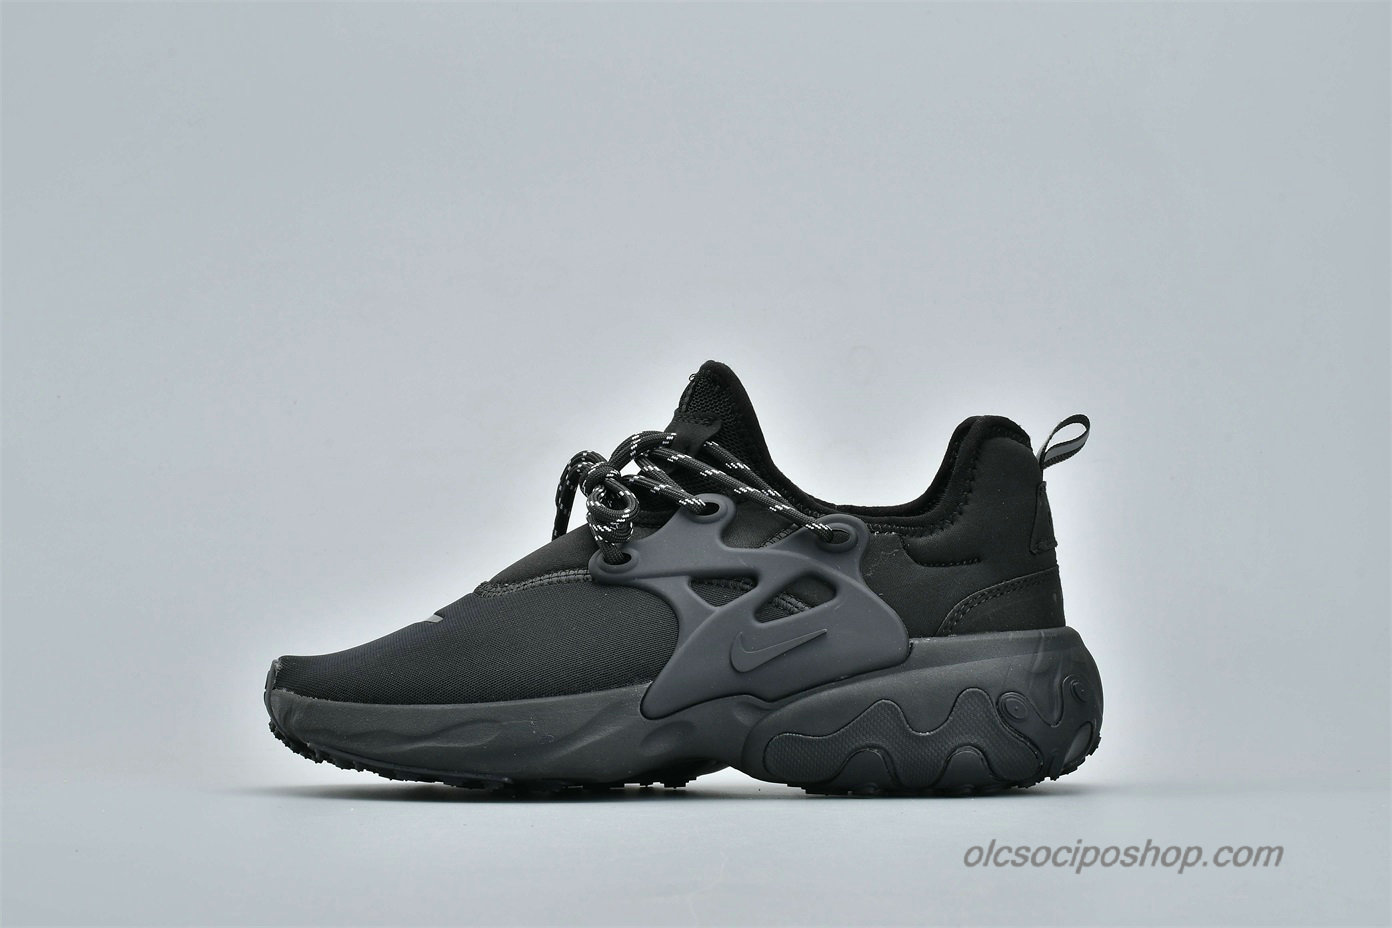 Nike Presto React Fekete Cipők (AV2605-003) - Kattintásra bezárul